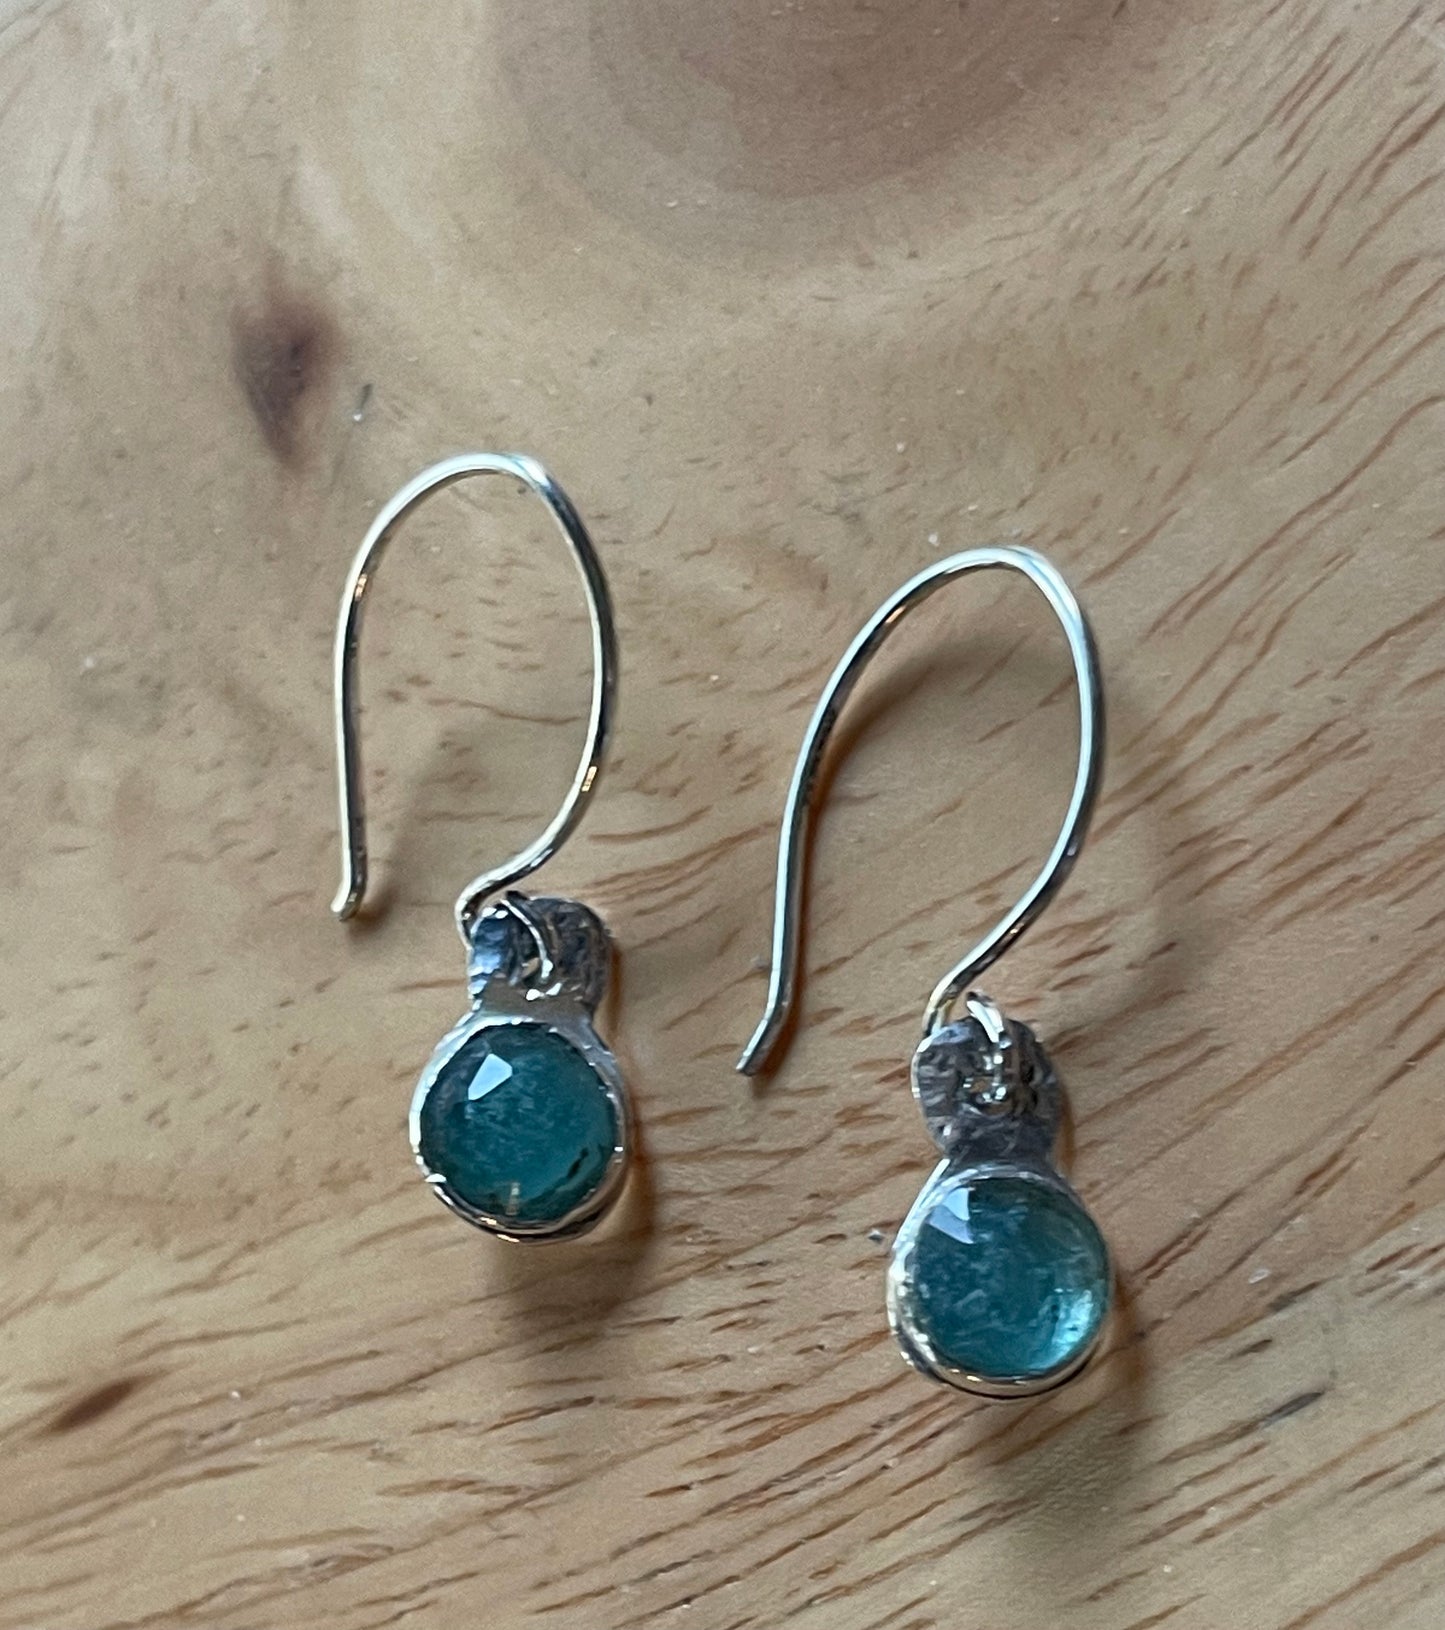 Blue tourmaline earrings